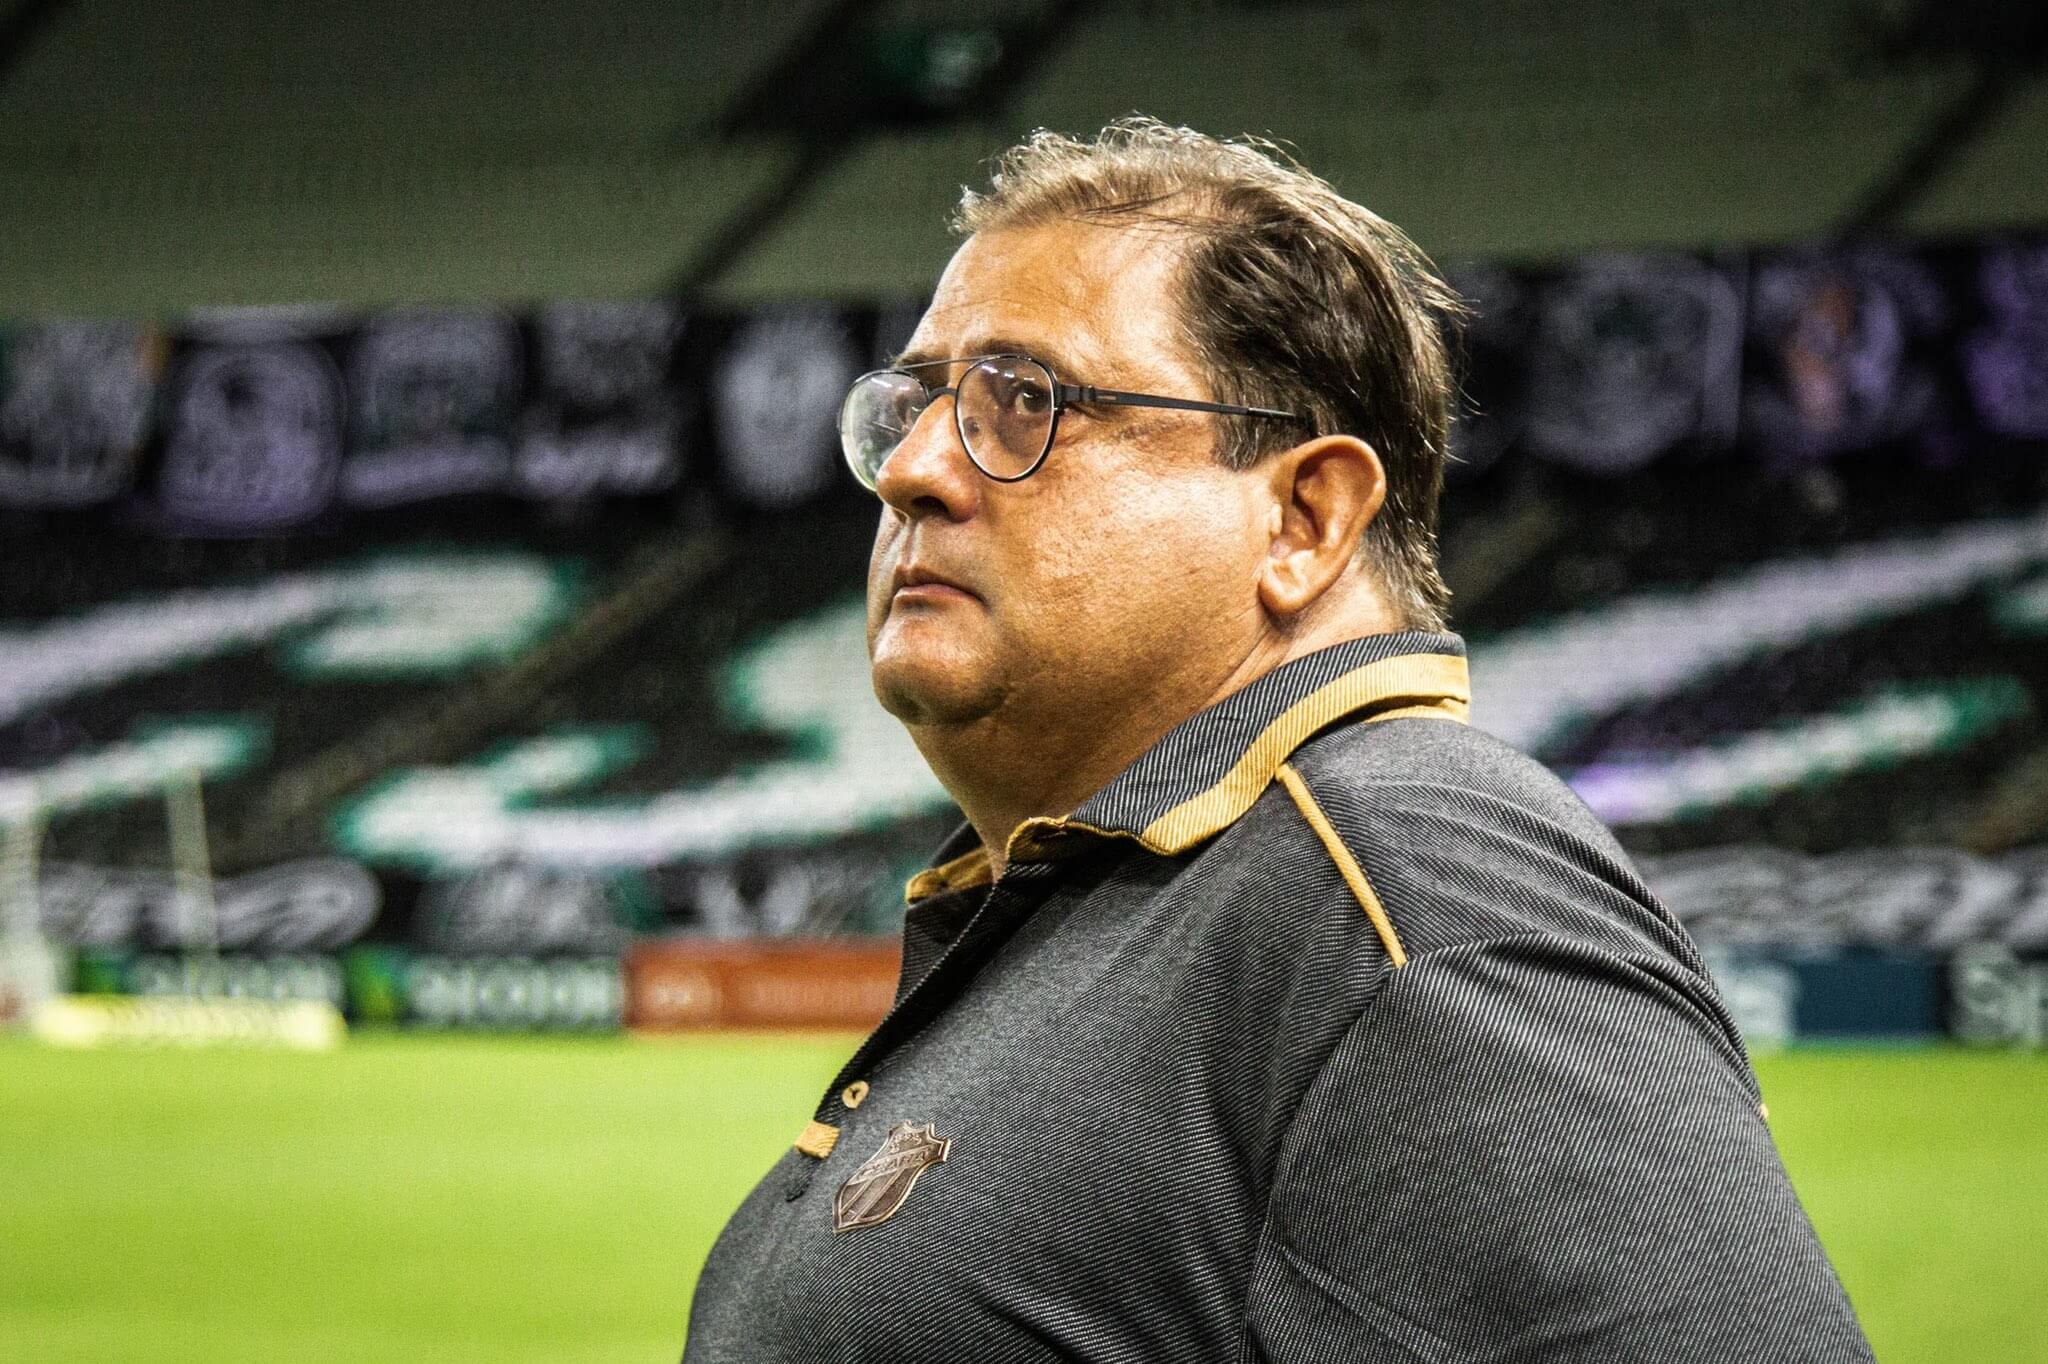 Sport demite técnico Guto Ferreira após eliminação na Copa do Brasil -  14/02/2020 - UOL Esporte